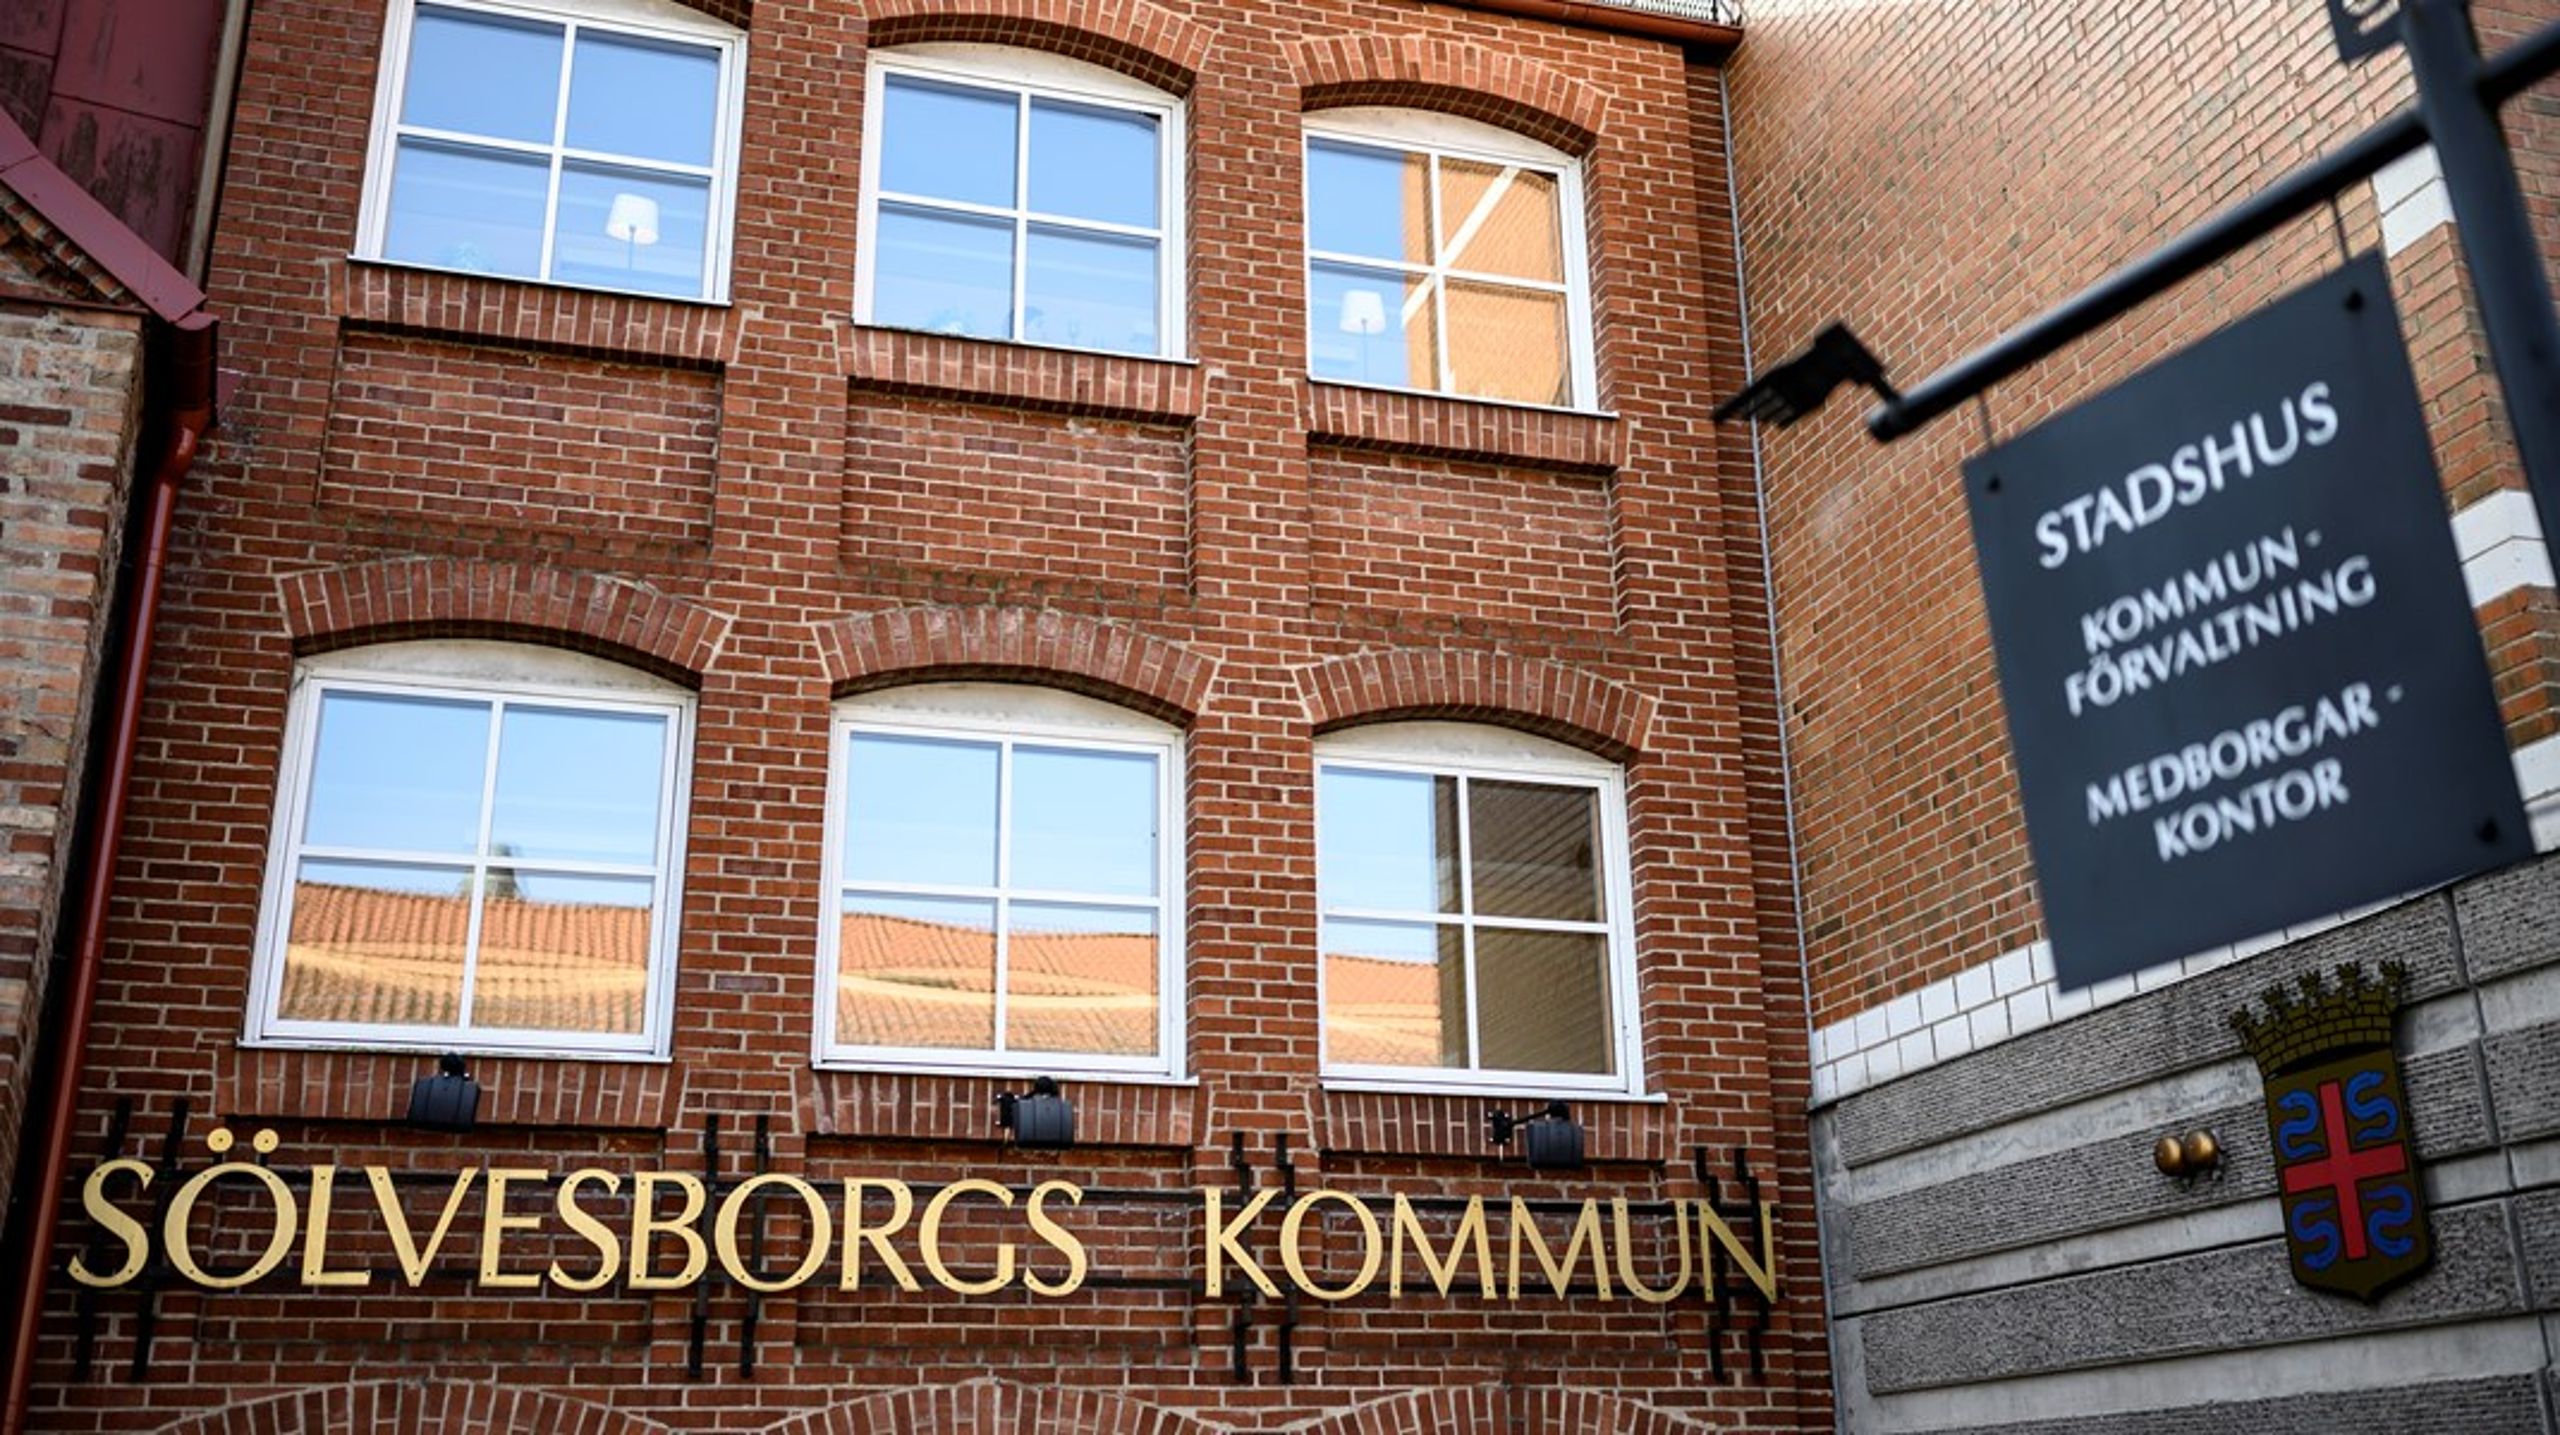 I Sölvesborgs kommun blev en skolchef utköpt 2019 efter att chefen kritiserat en handlingsplan av de styrande politikerna i kommunen. Utköpet kostade&nbsp;skattebetalarna 1,4 miljoner kronor.&nbsp;